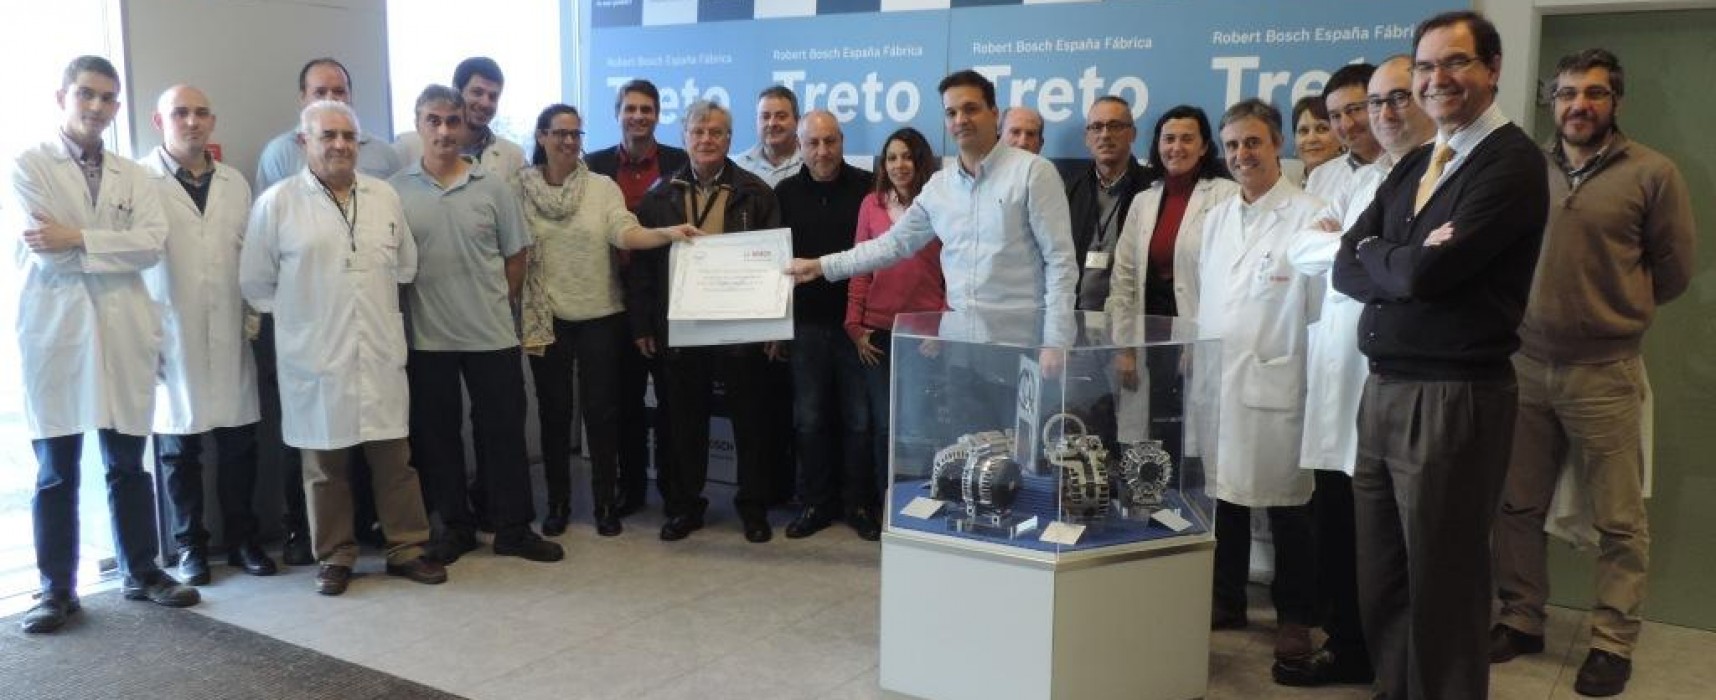 El Banco de Alimentos de Cantabria agradece a los empleados de Bosch en Treto su solidaridad